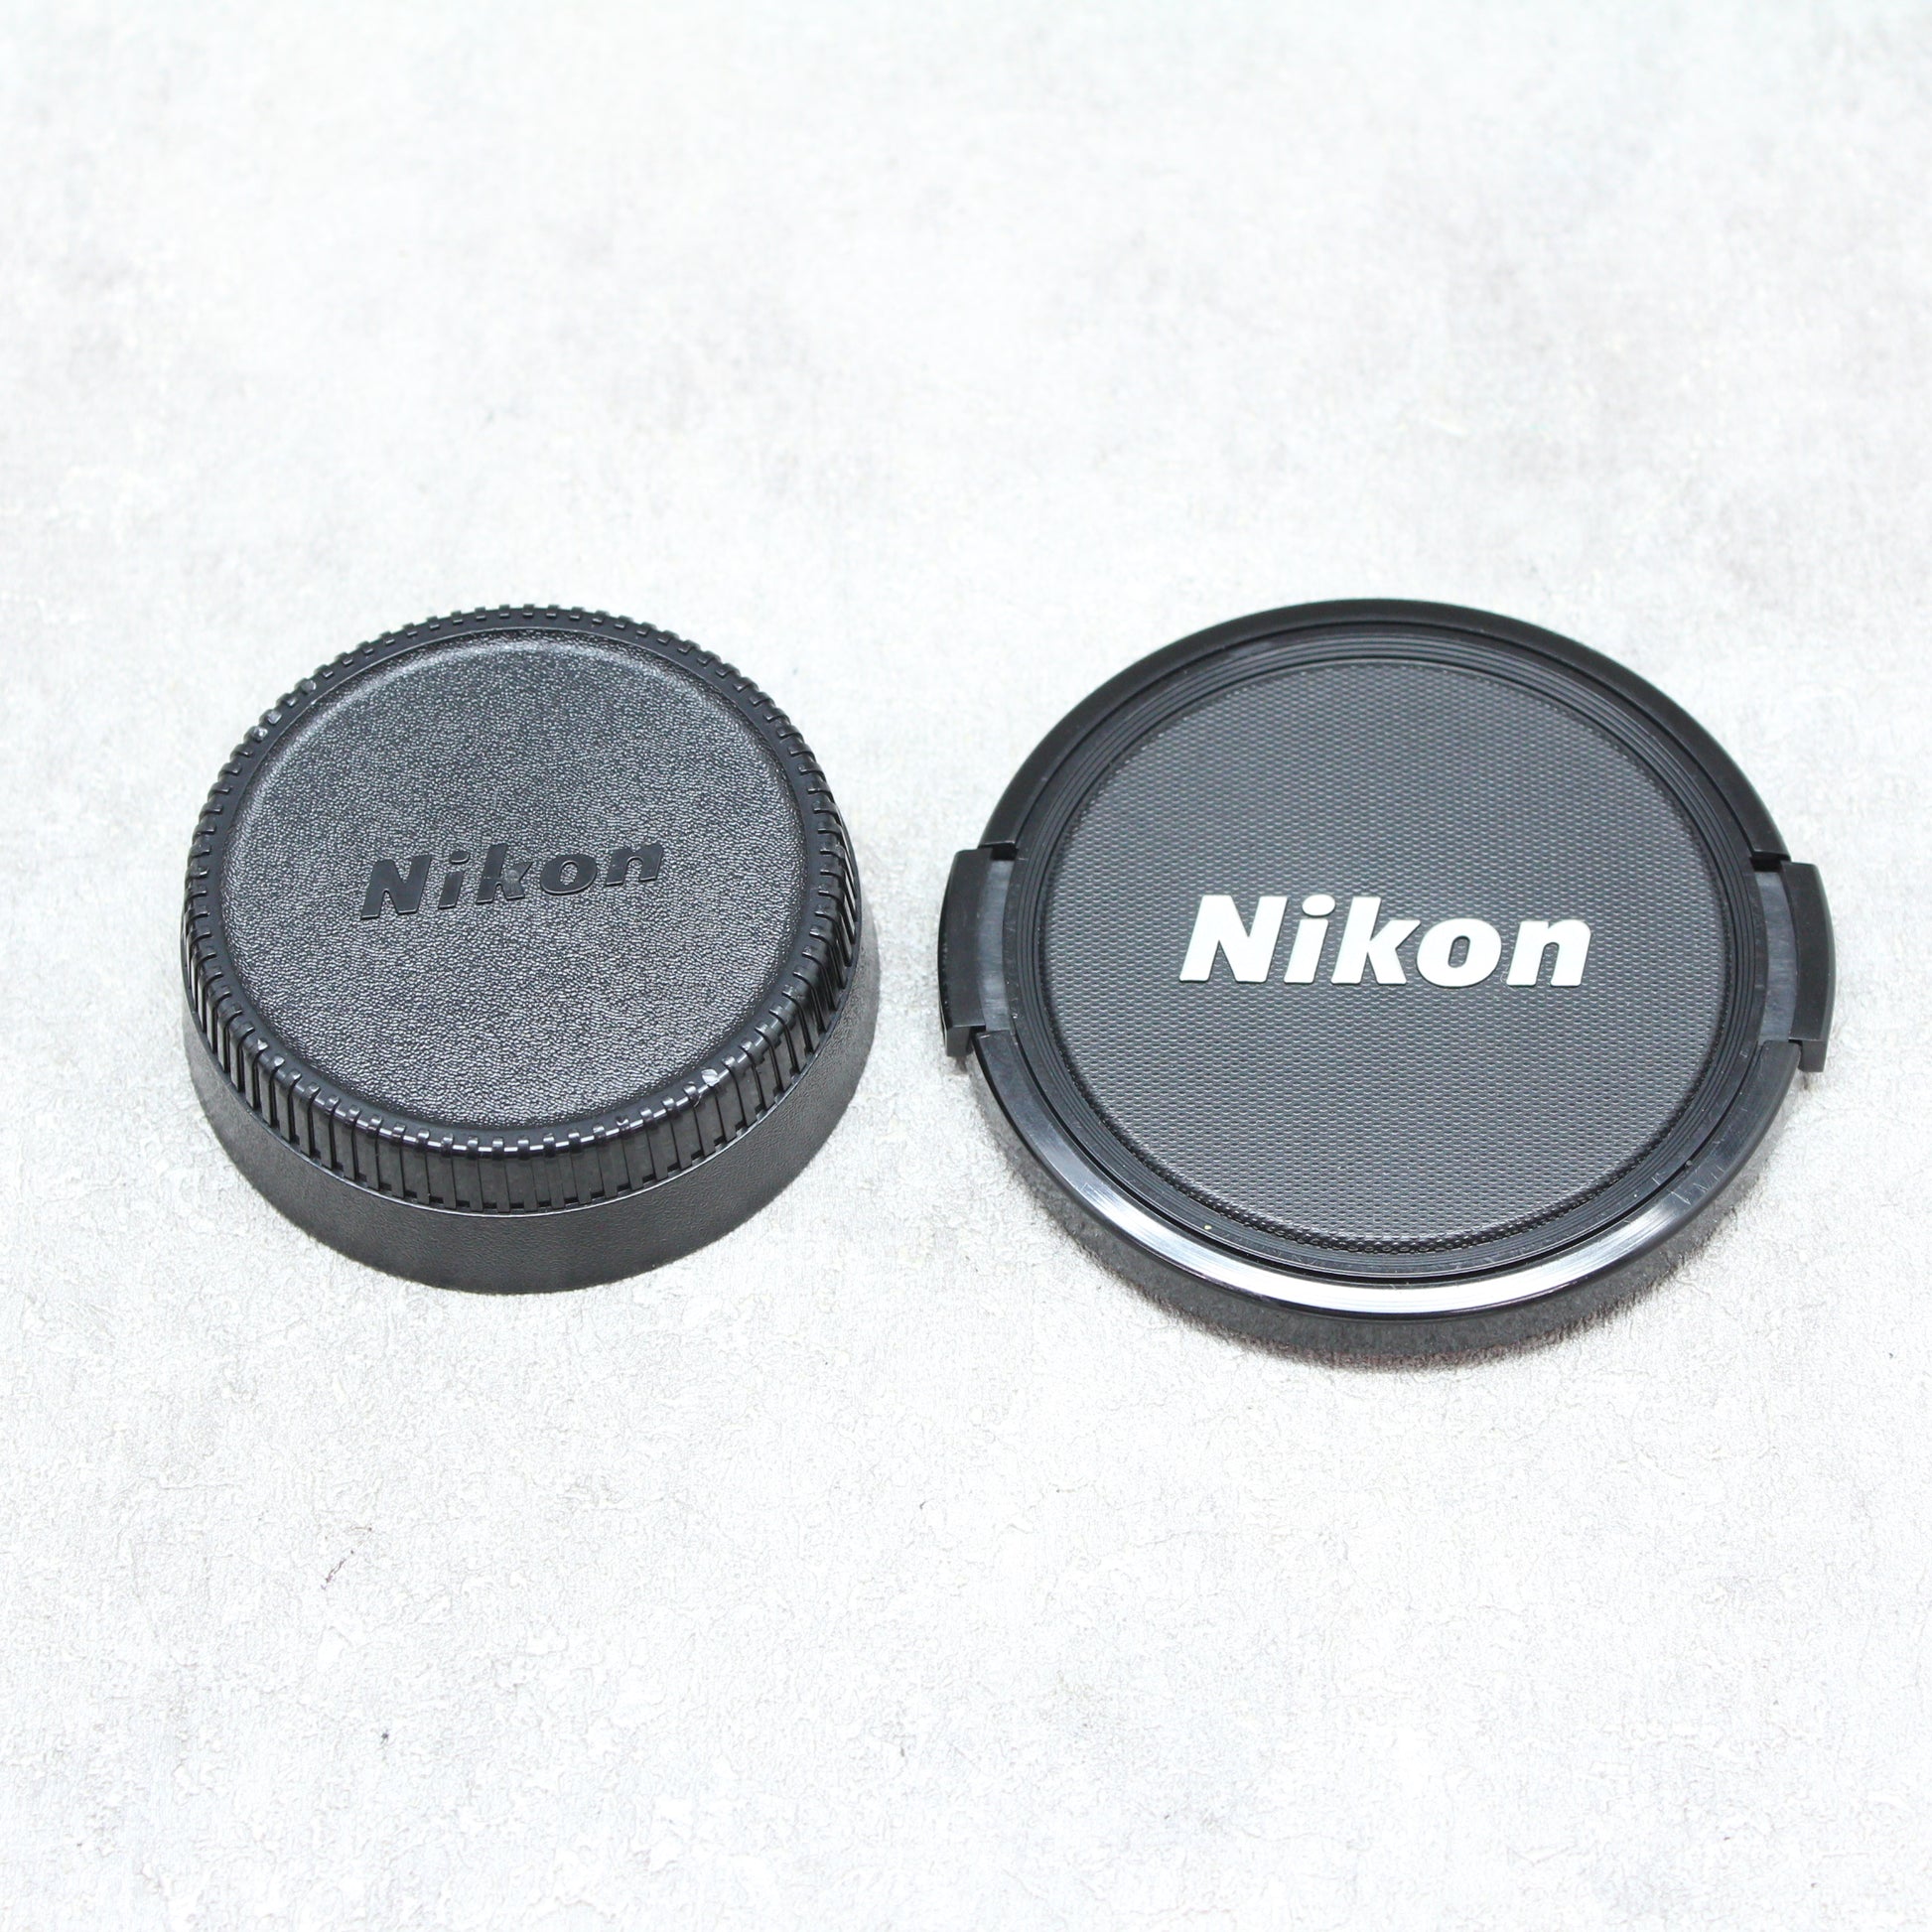 中古品 Nikon AF MICRO NIKKOR 55mm F2.8 No.238152 – サトカメ